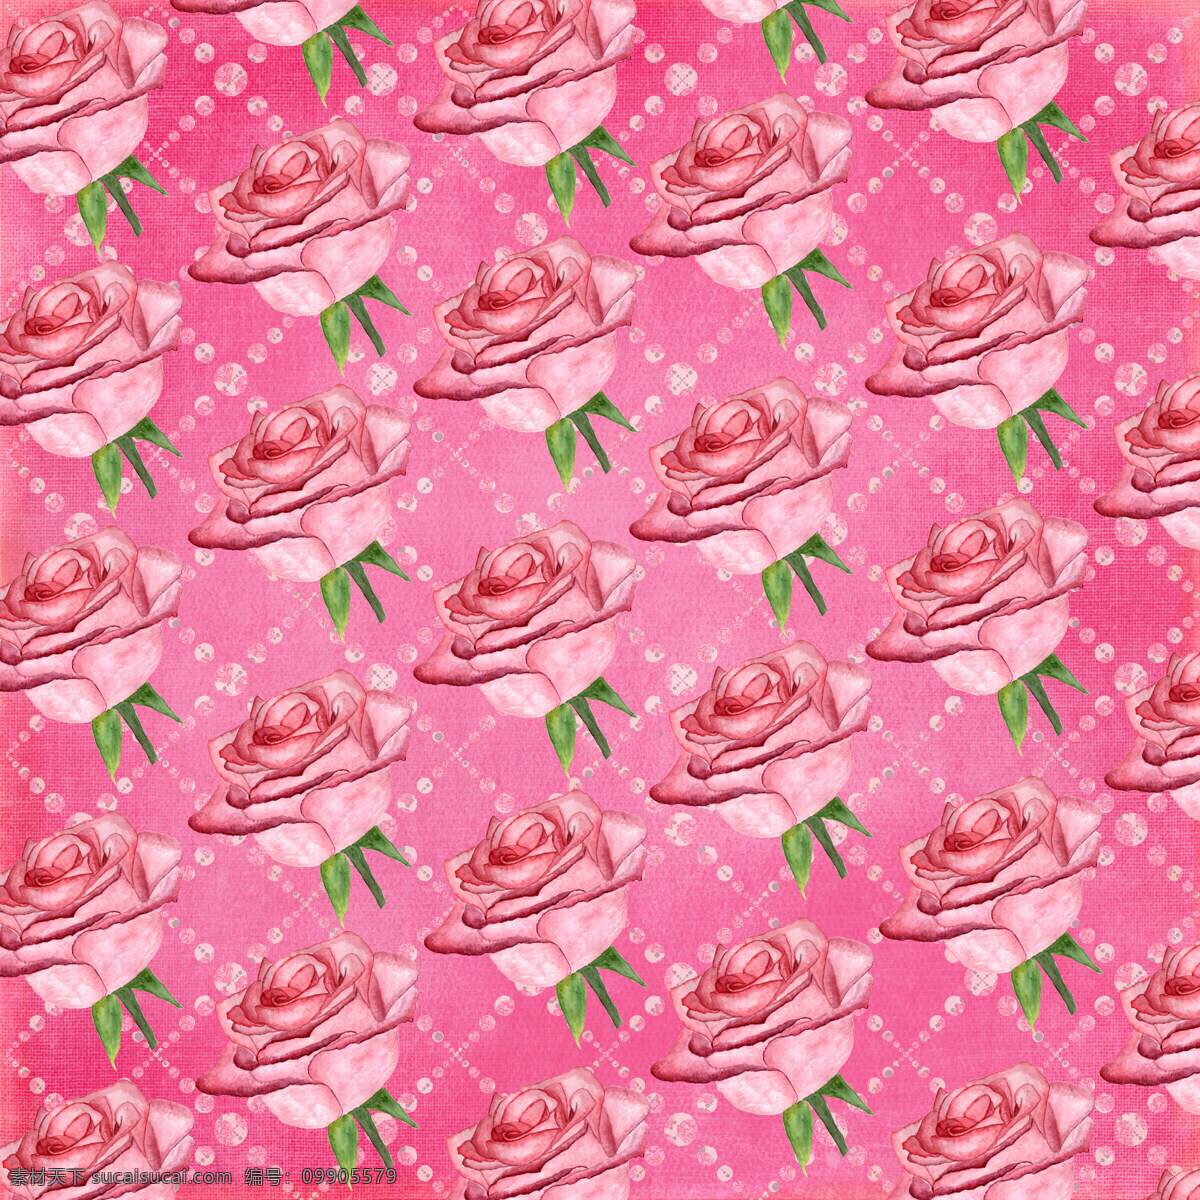 美丽 粉红 玫瑰花 粉色 情人节 背景 爱心 背景素材 花卉 花纹 浪漫 填充背景